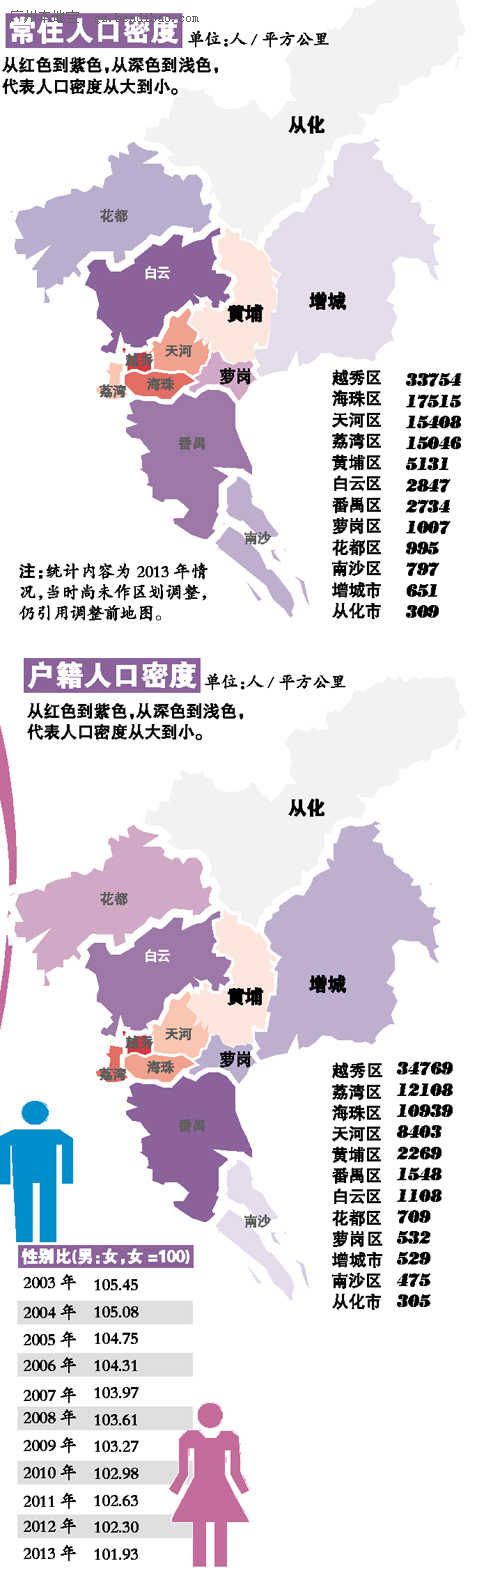 2019 广州 常住人口_广州地区常住人口-广州市工业和信息化委员会